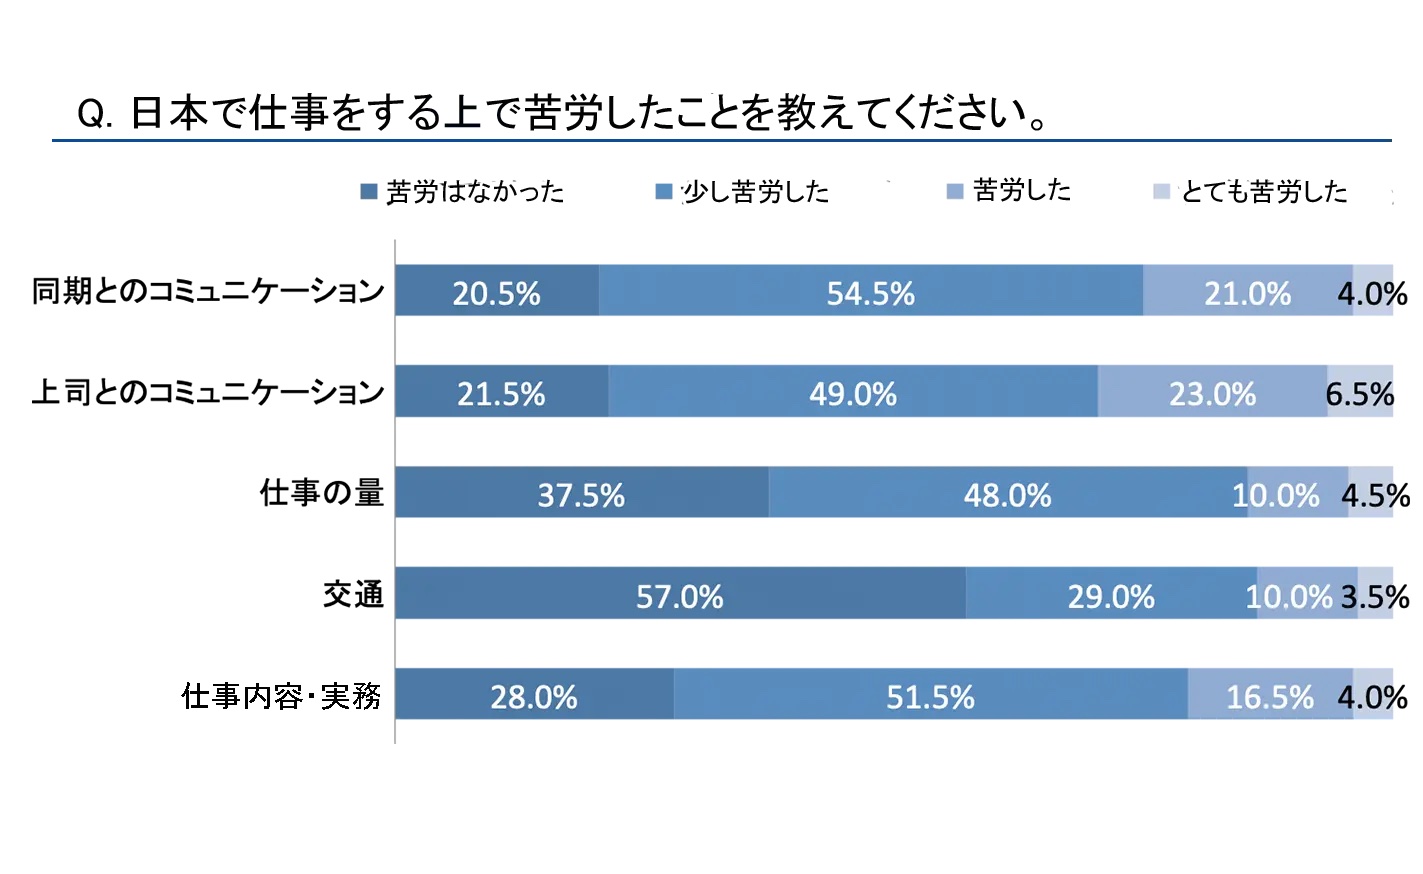 日本で働いている外国人へのアンケート結果